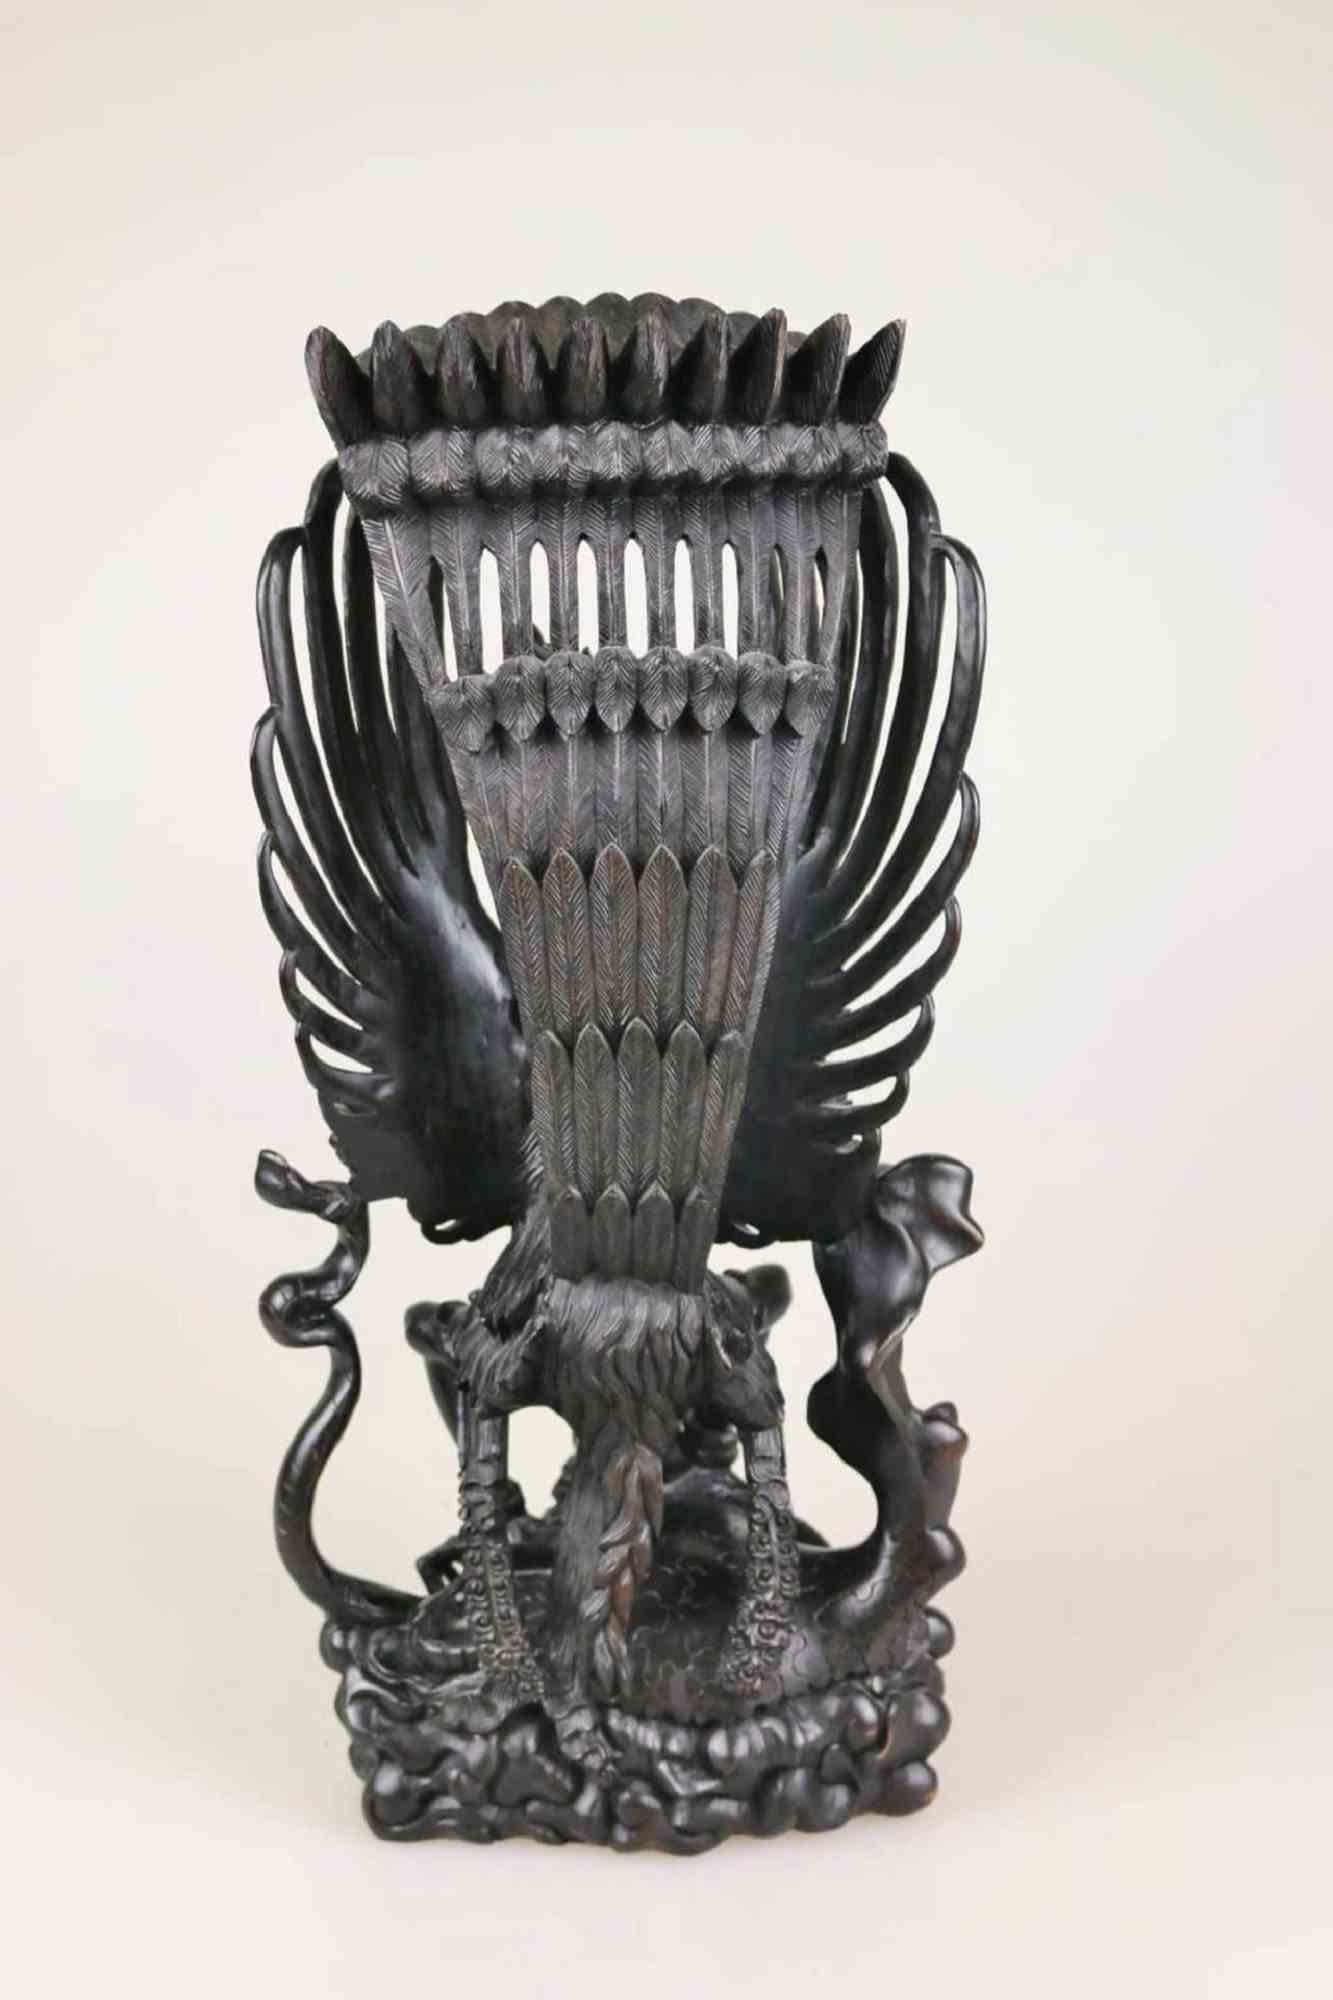 Vishnu und Garuda ist ein Originalkunstwerk, das von einem anonymen indonesischen Künstler in der 2. Hälfte des 20. Jahrhunderts geschaffen wurde,

Vollständig in Holz ausgeführt, in feiner durchbrochener Schnitzerei.

Dieses dekorative Objekt